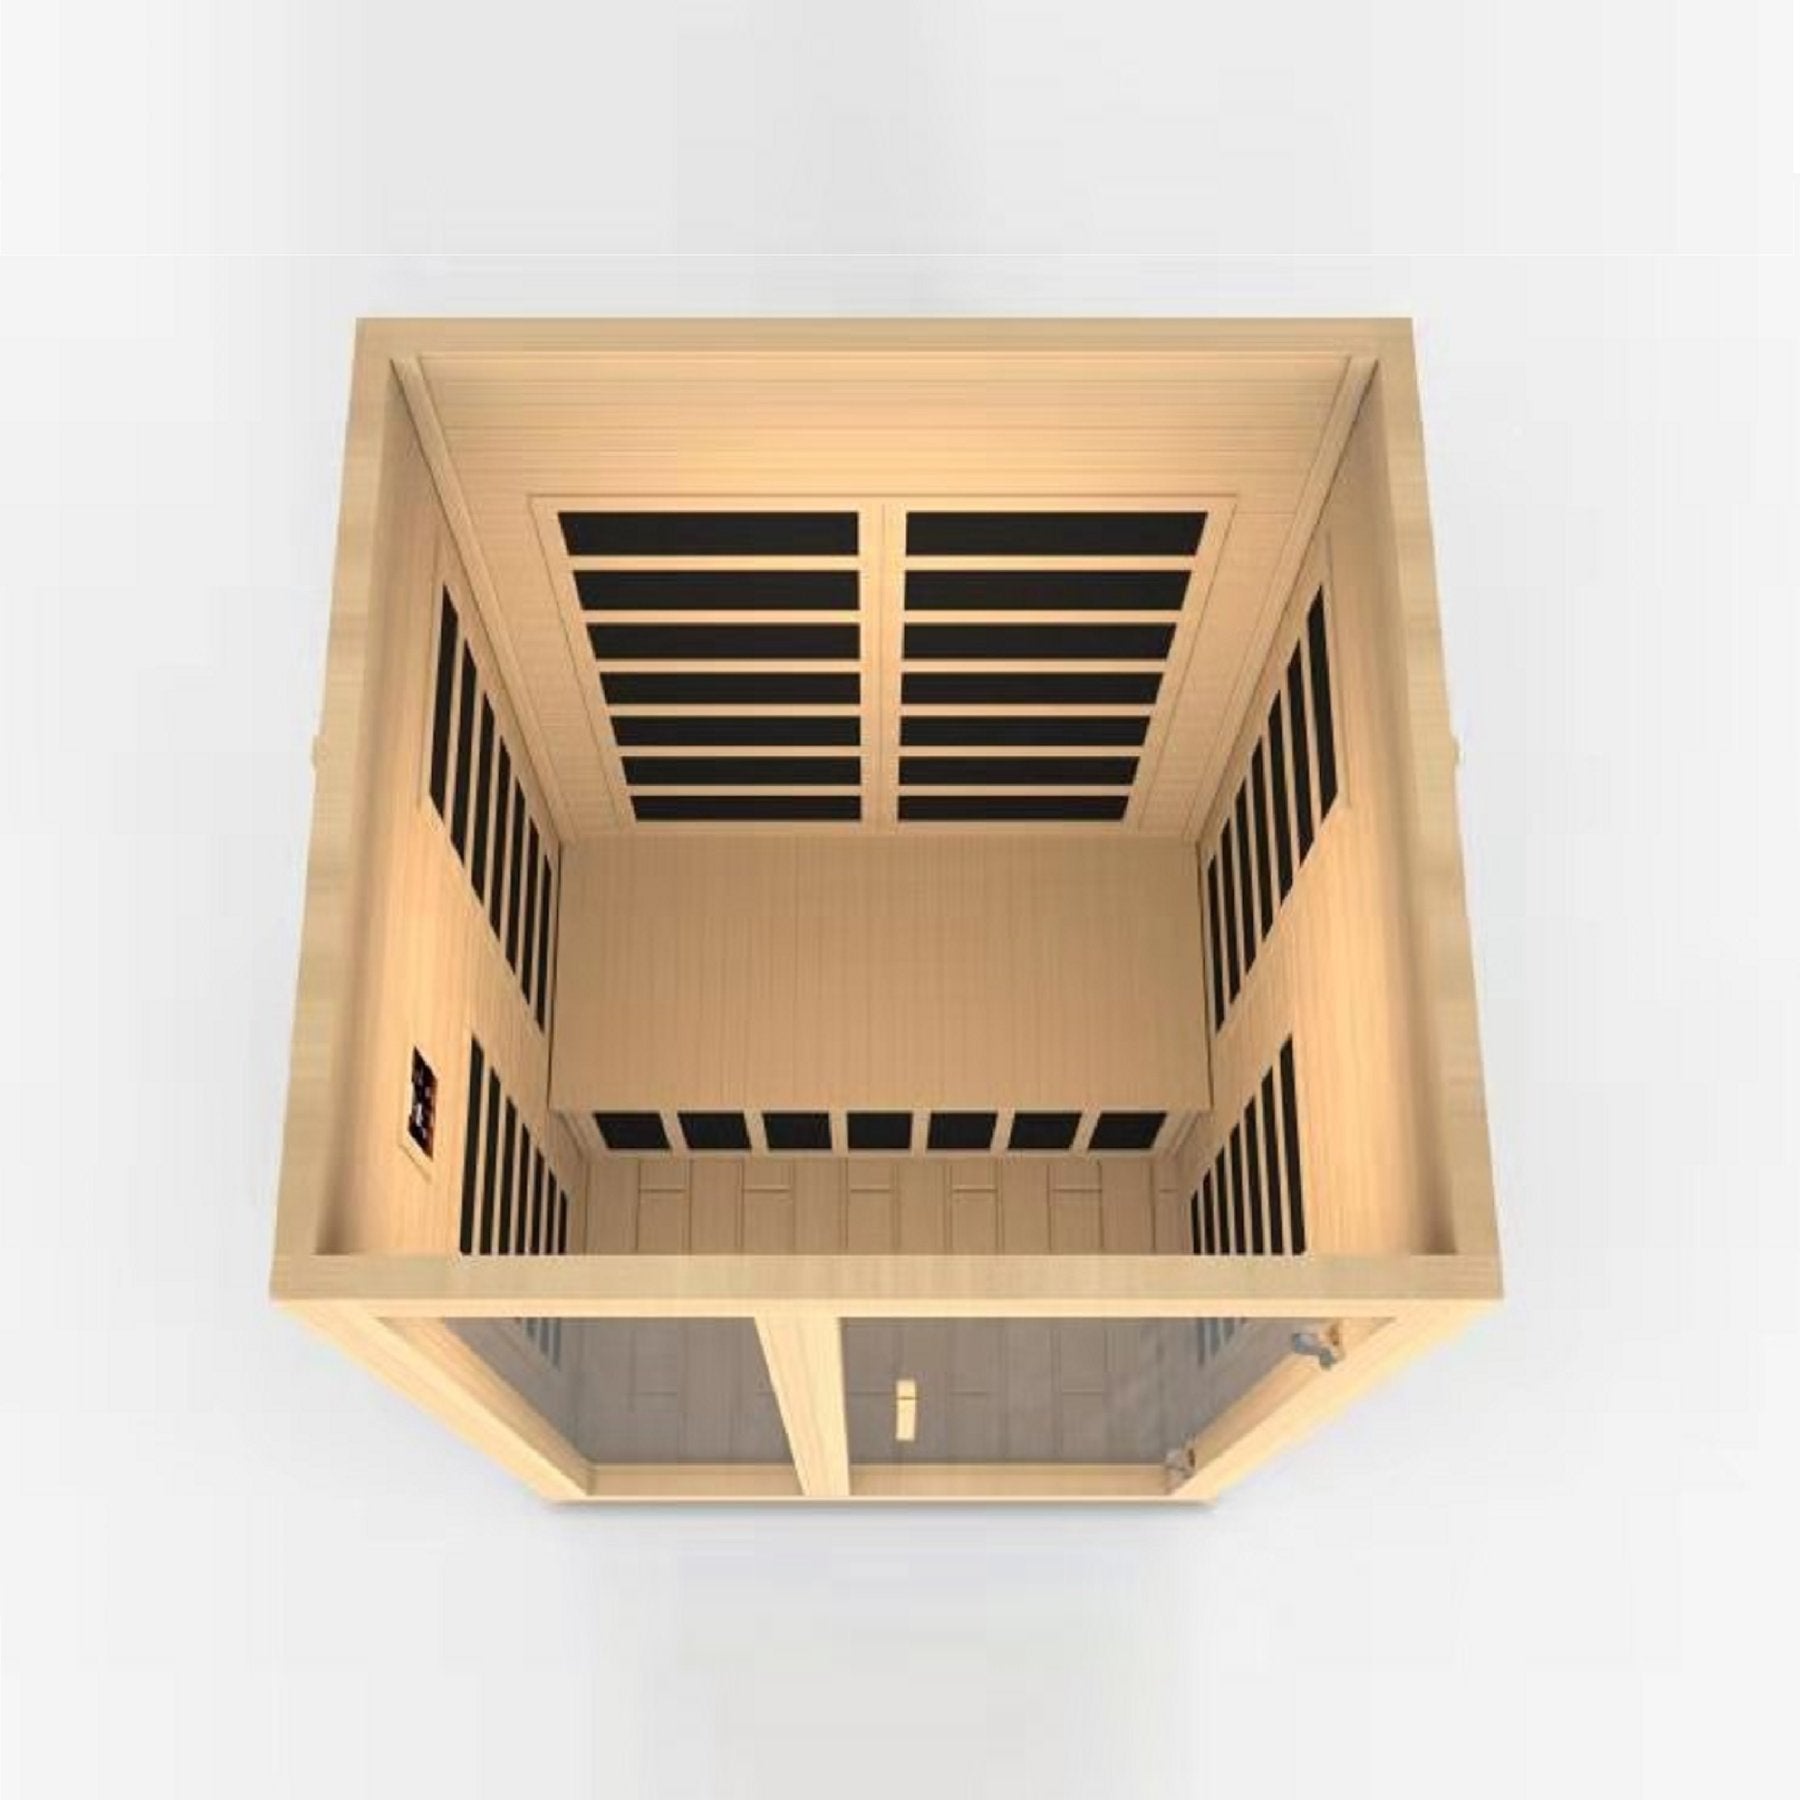 Low EMF Infrared Sauna by Golden Designs Buy Online at FindYourBath.com (DYN-6209-01)